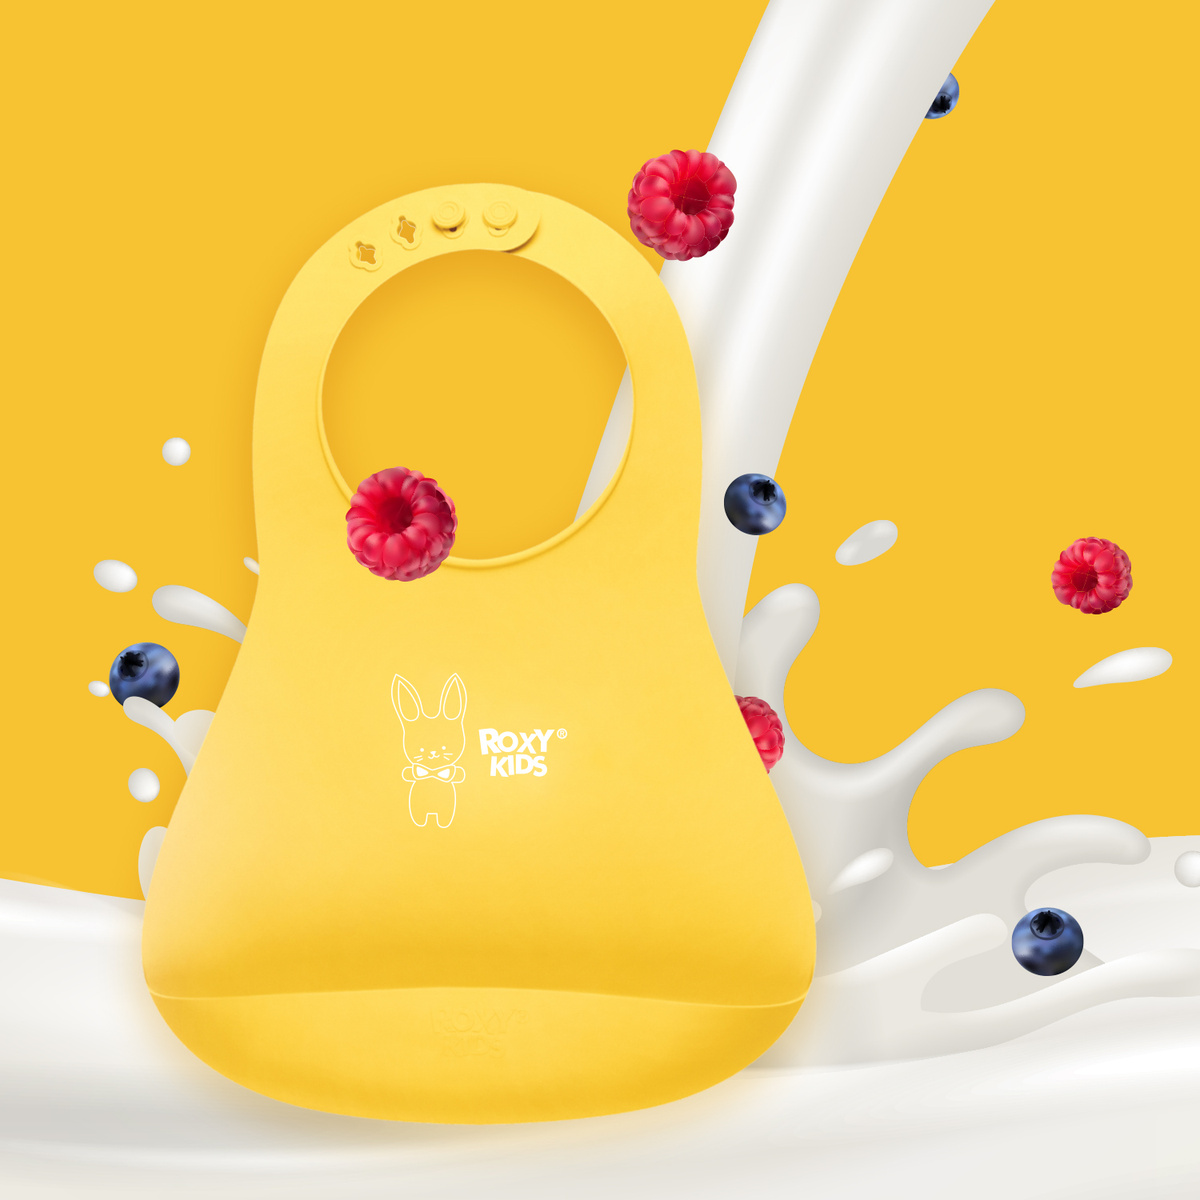 ROXY-KIDS / Силиконовый детский нагрудник для кормления с карманом / Слюнявчик, цвет желтый  #1